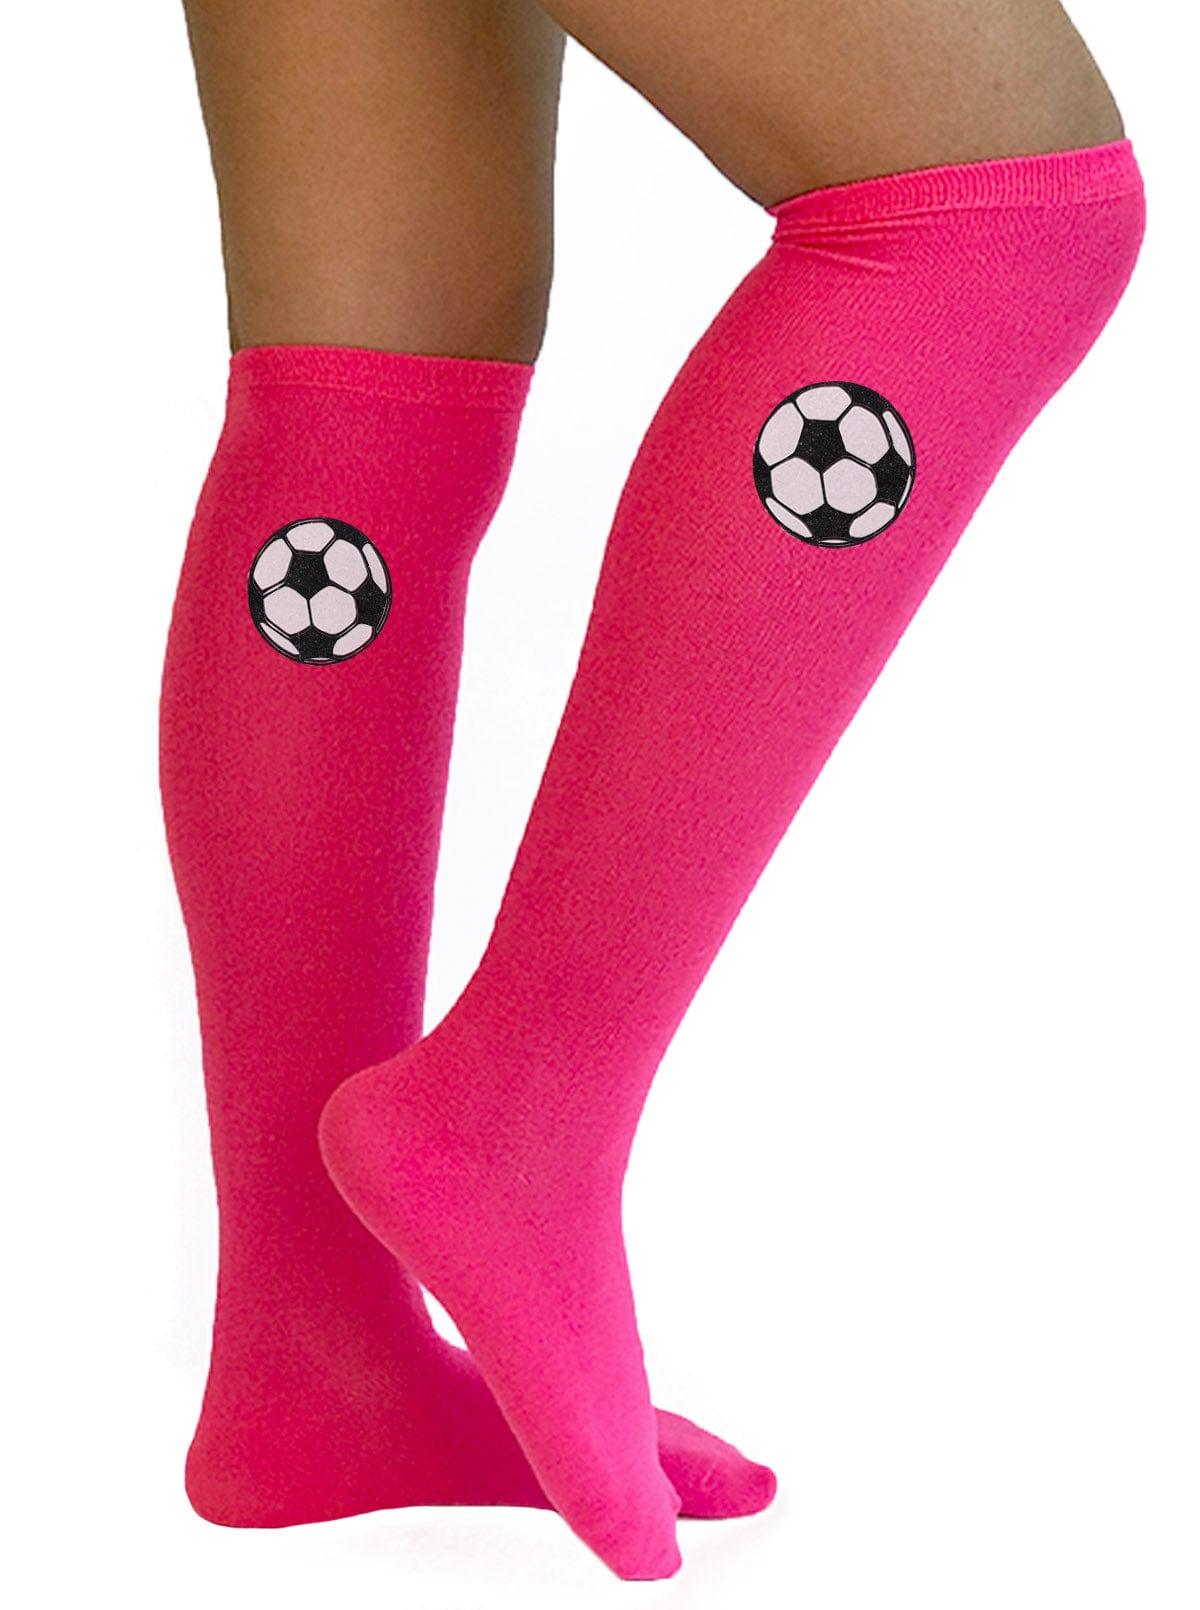 Soccer Socks Hair Bow Combo